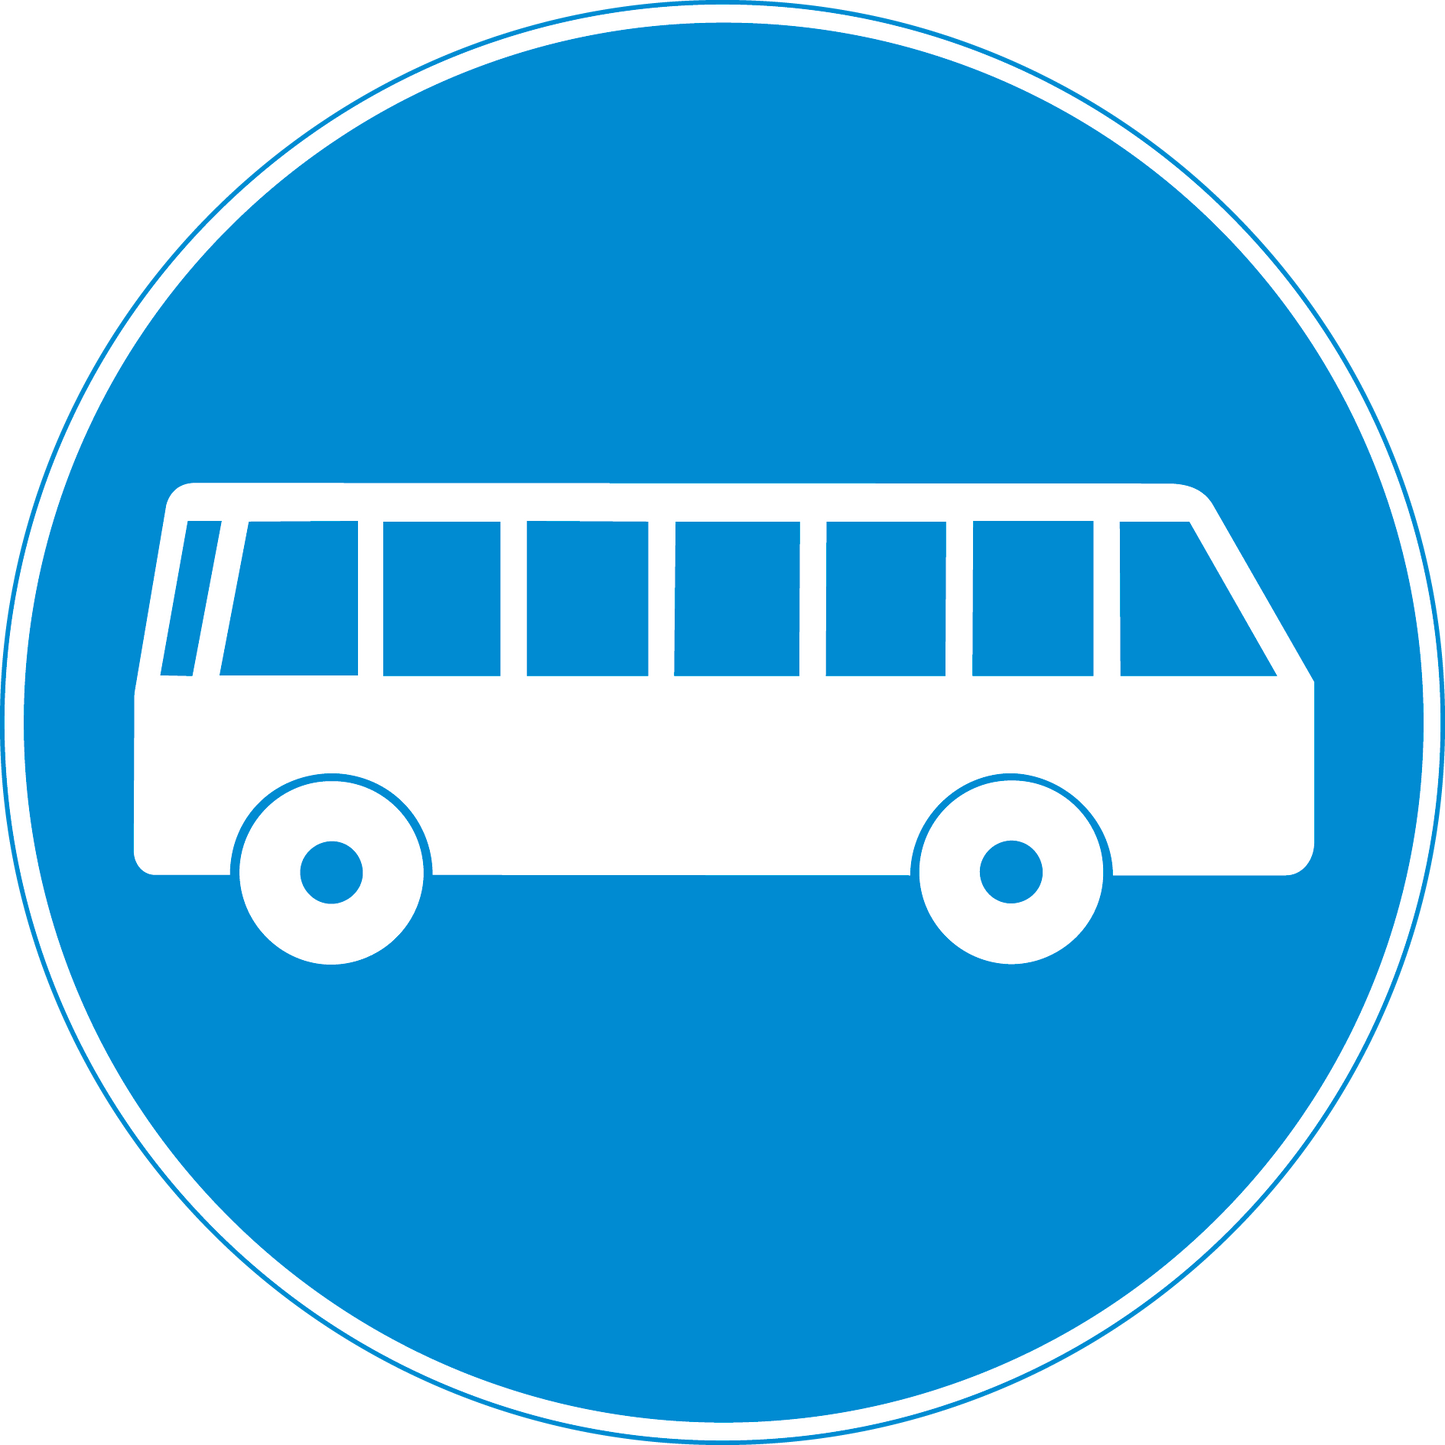 Vorschriftssignal 2.64 Busfahrbahn 60cm HIP/R2